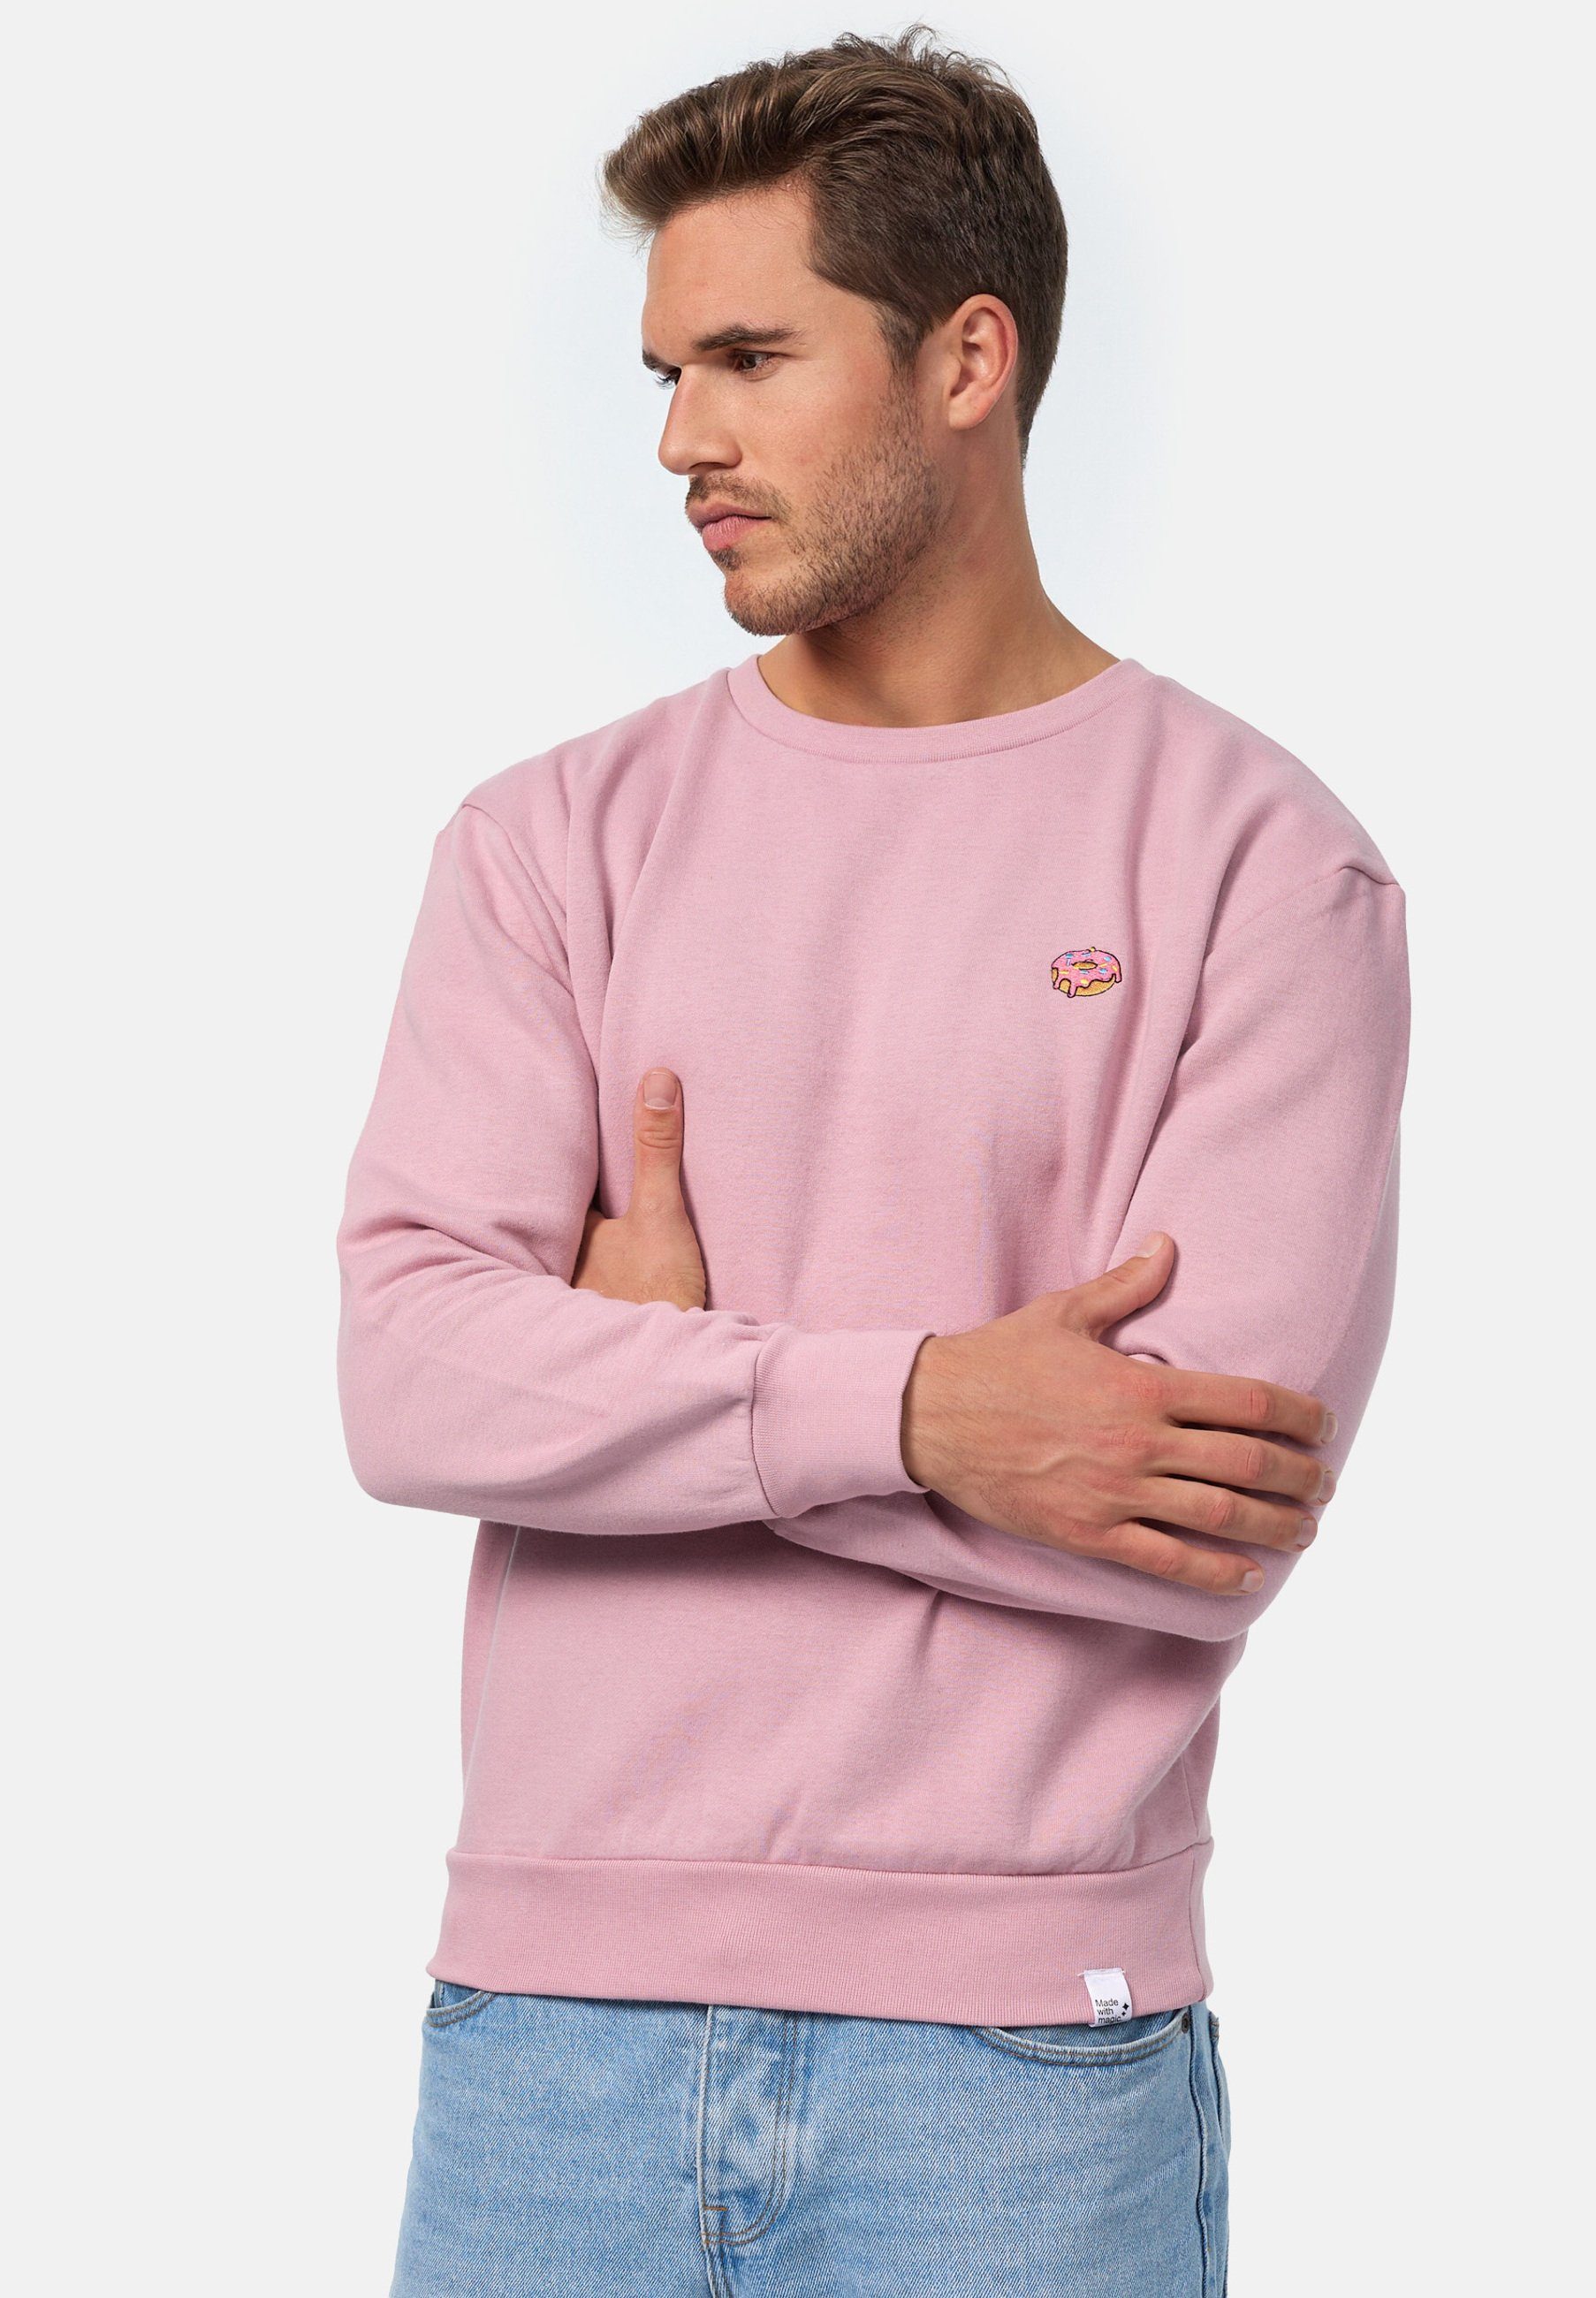 MIKON Donut zertifizierte Bio-Baumwolle Sweatshirt GOTS Pink